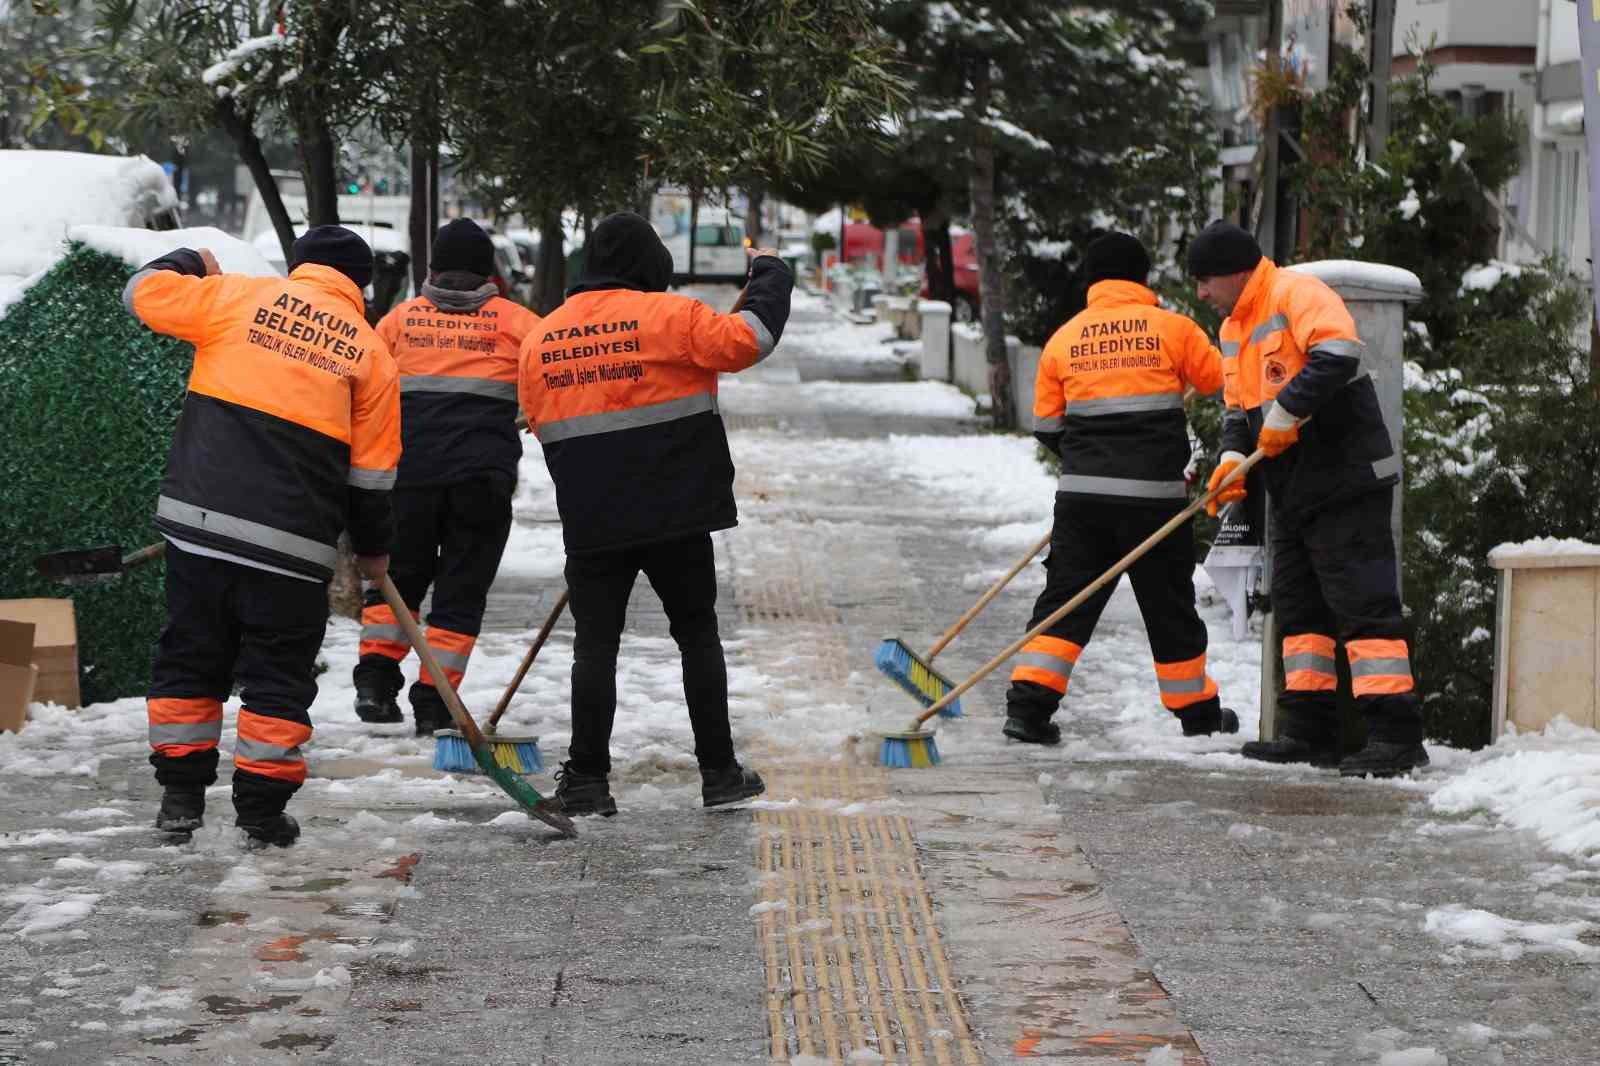 Atakum Belediyesi'nden aralıksız kar mücadelesi
